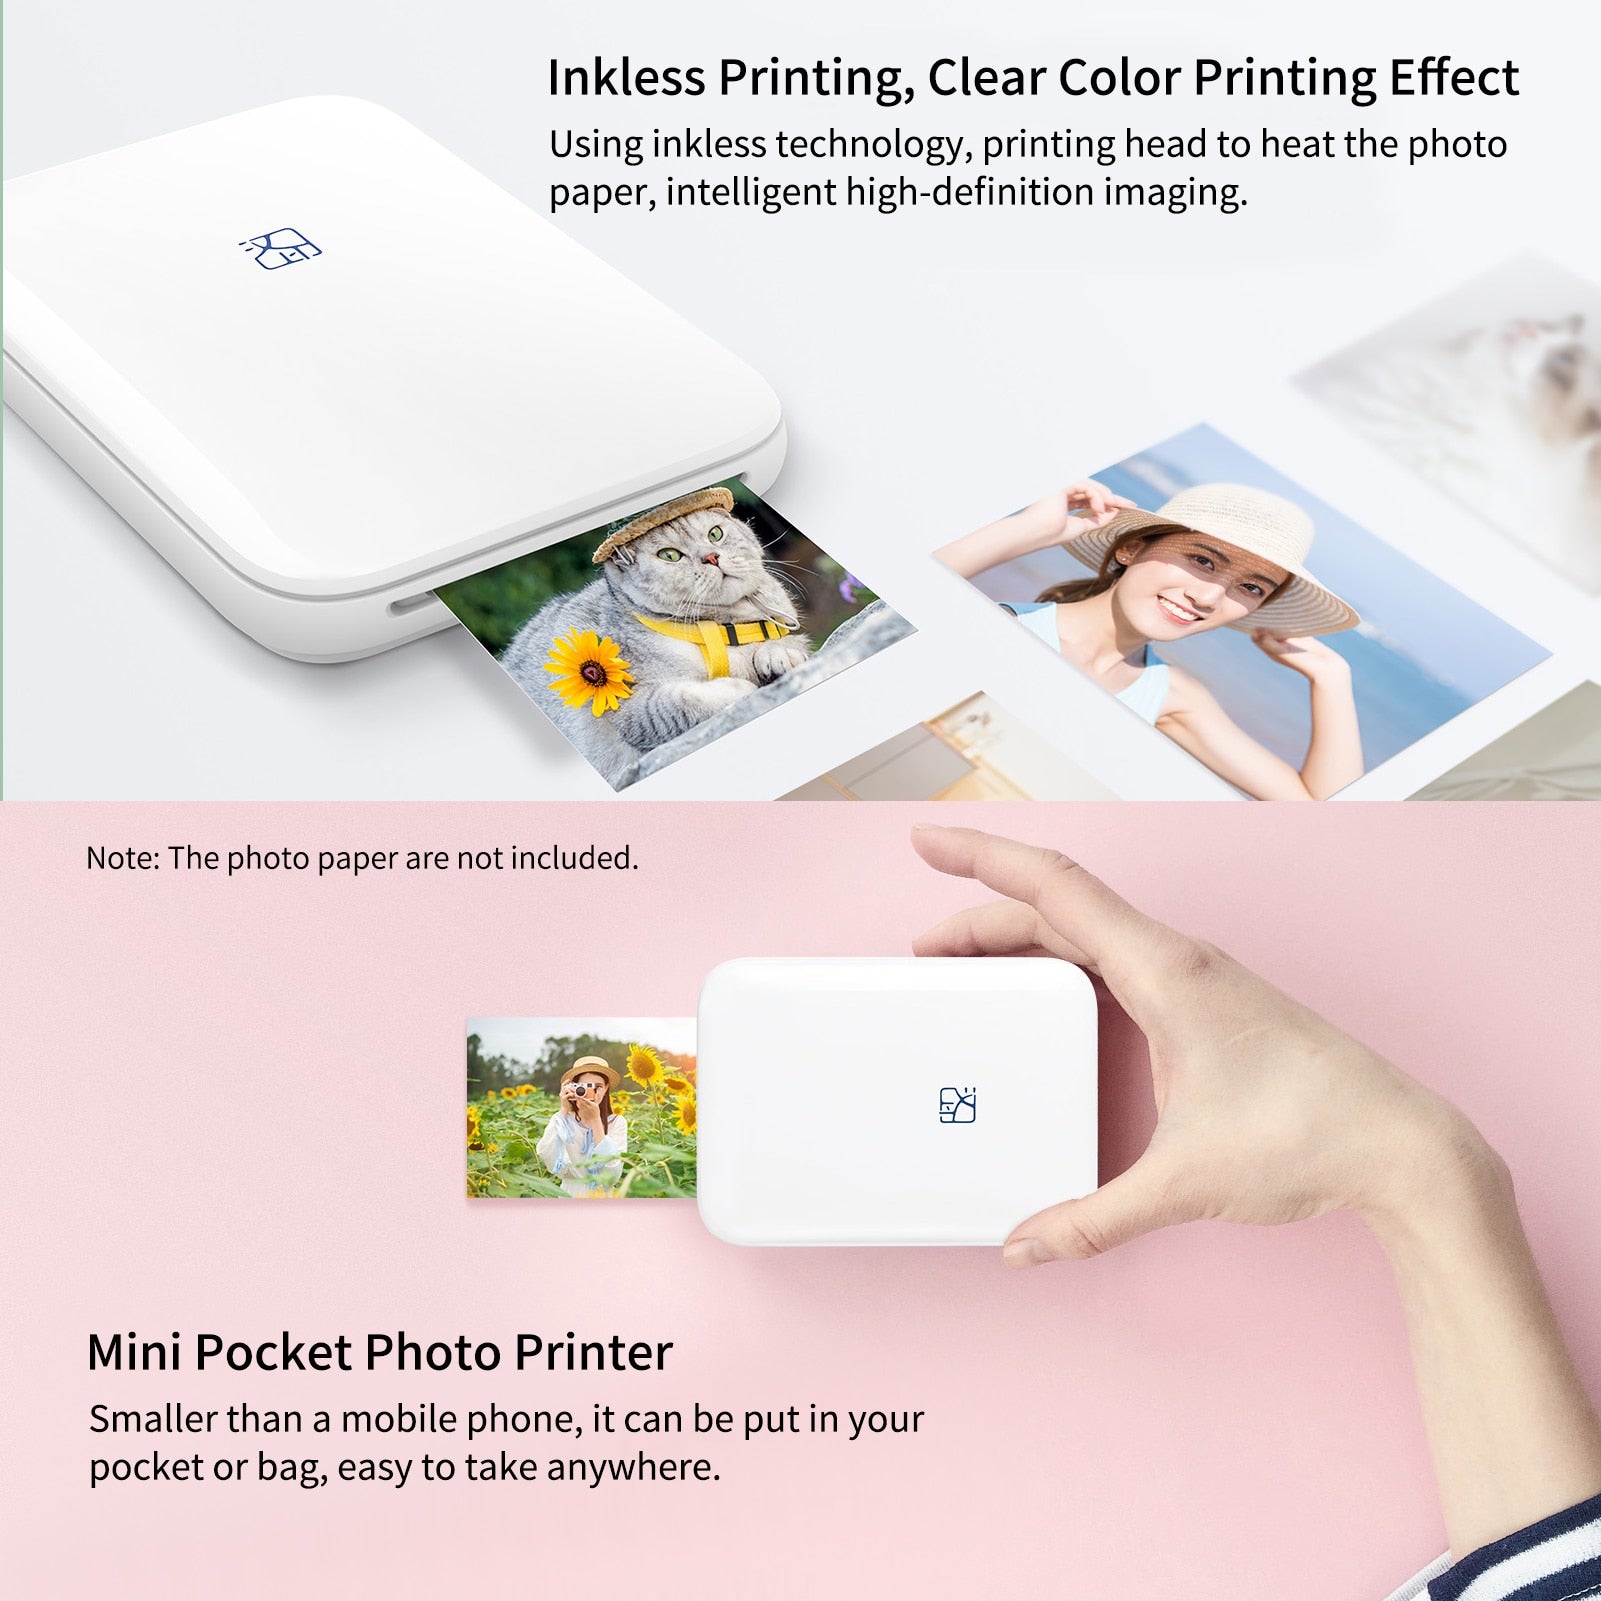 Mini Photo Printer